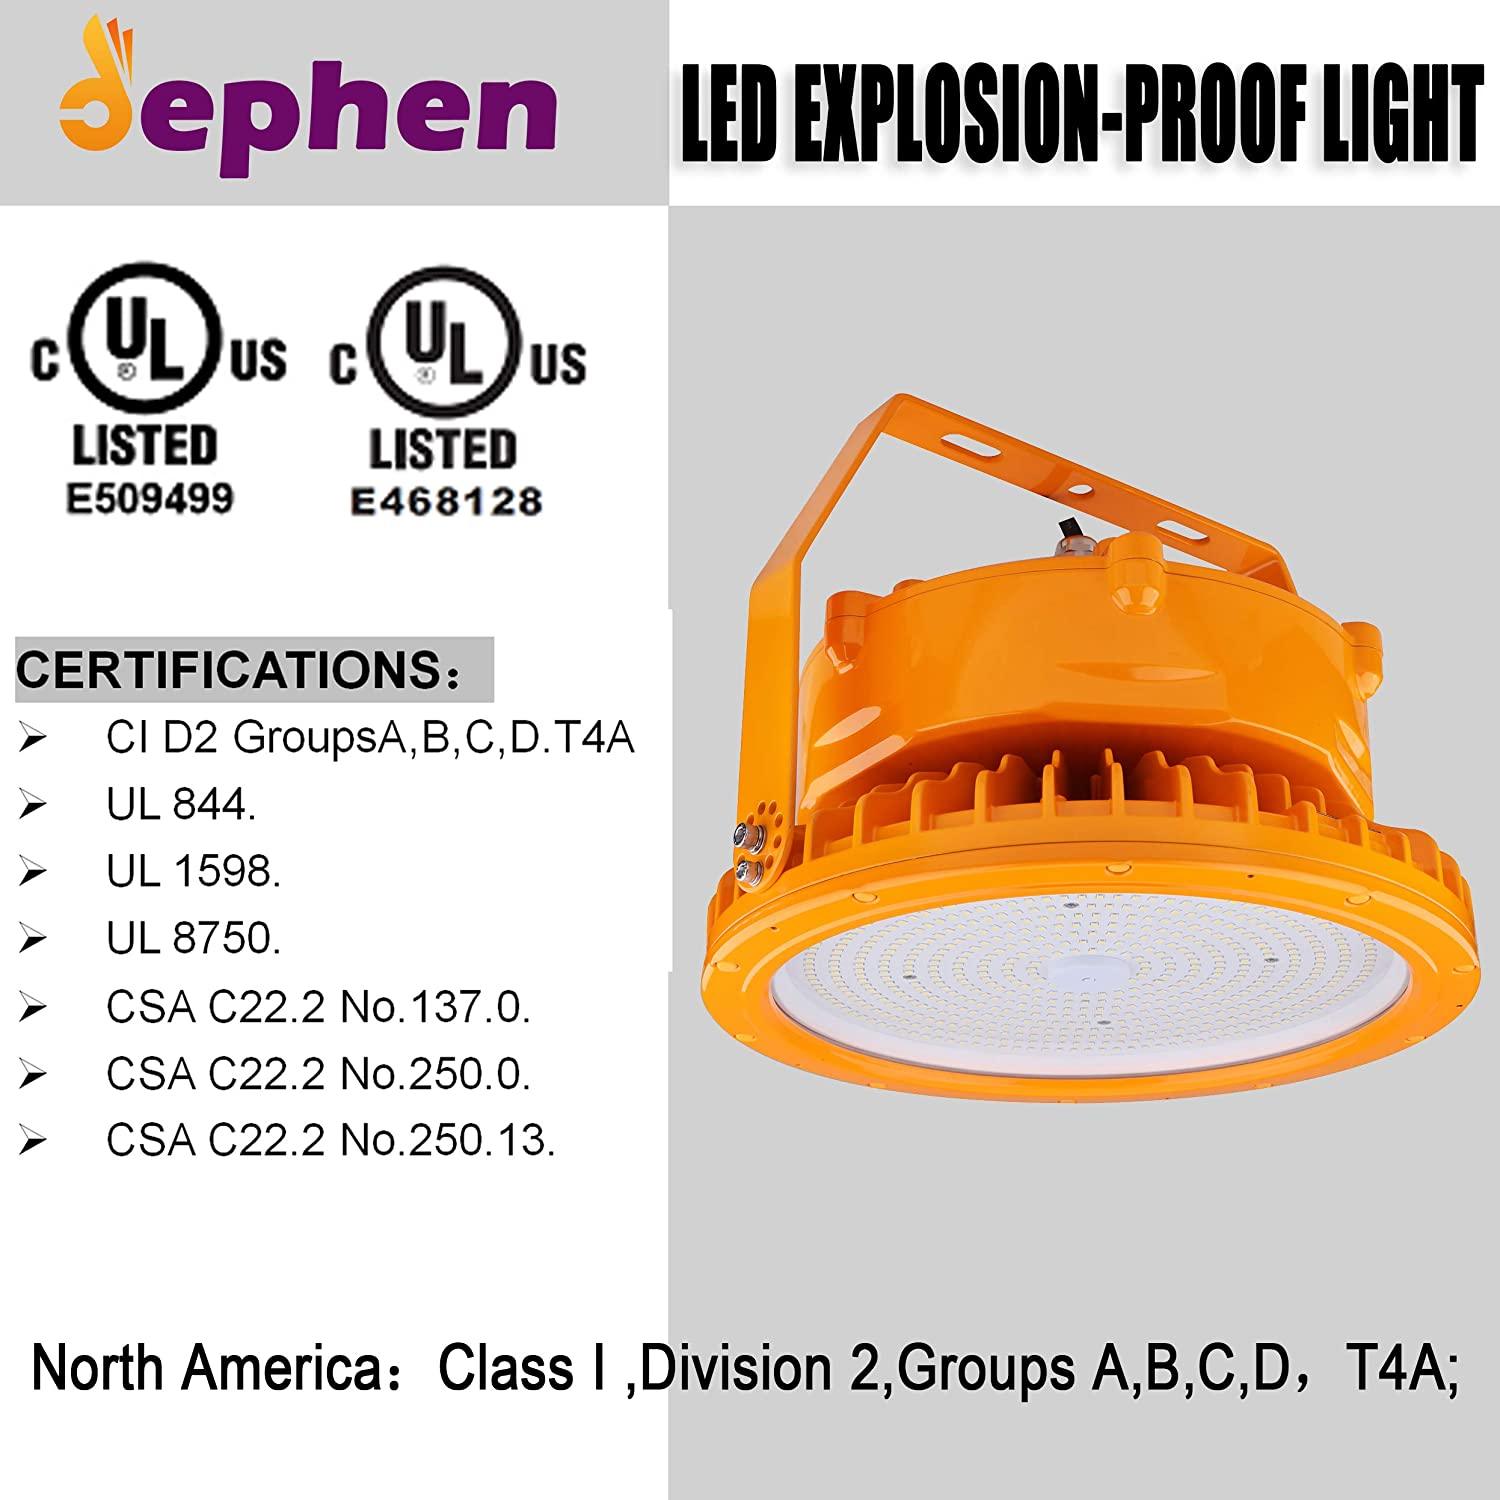 150W LED Explosion Proof Light 24750Lm 5700K UFO High Bay Industrial Lighting - Dephen